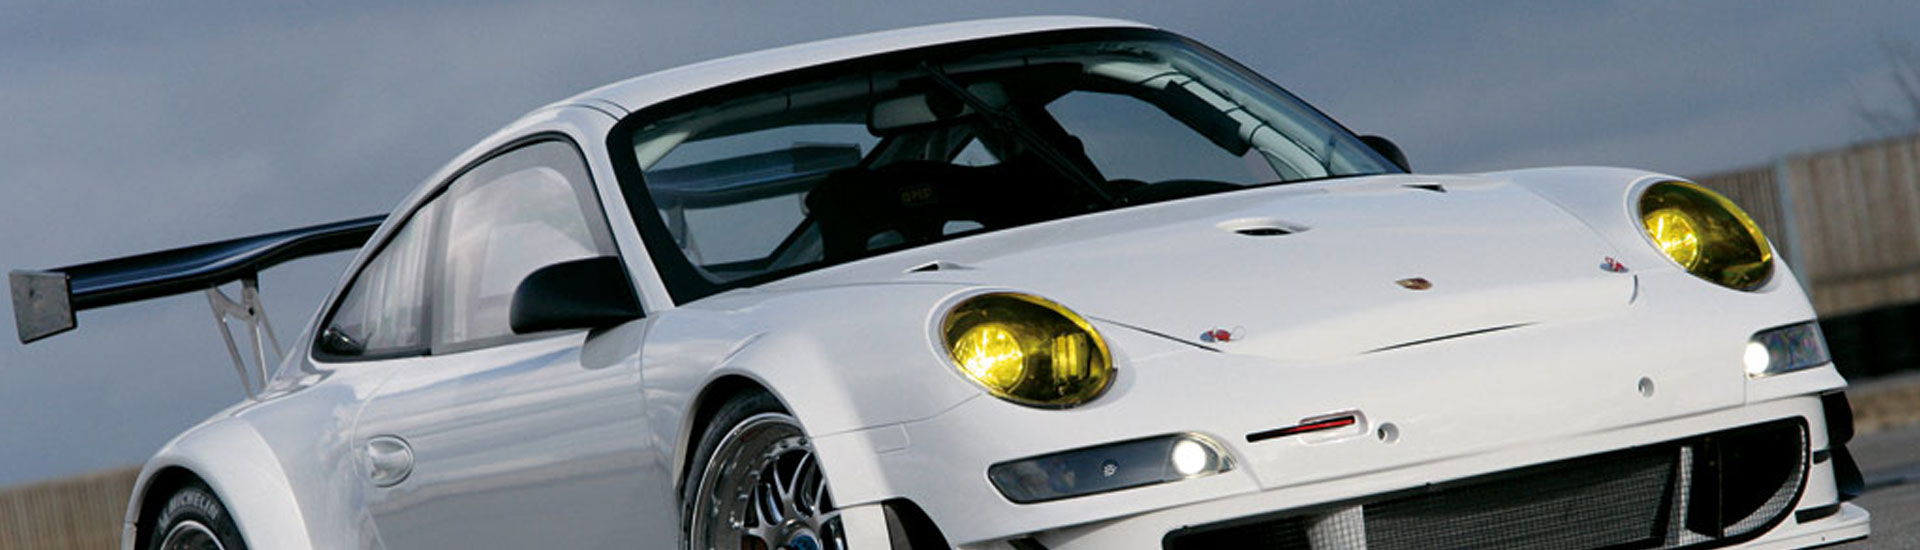 Porsche Headlight Tint Covers